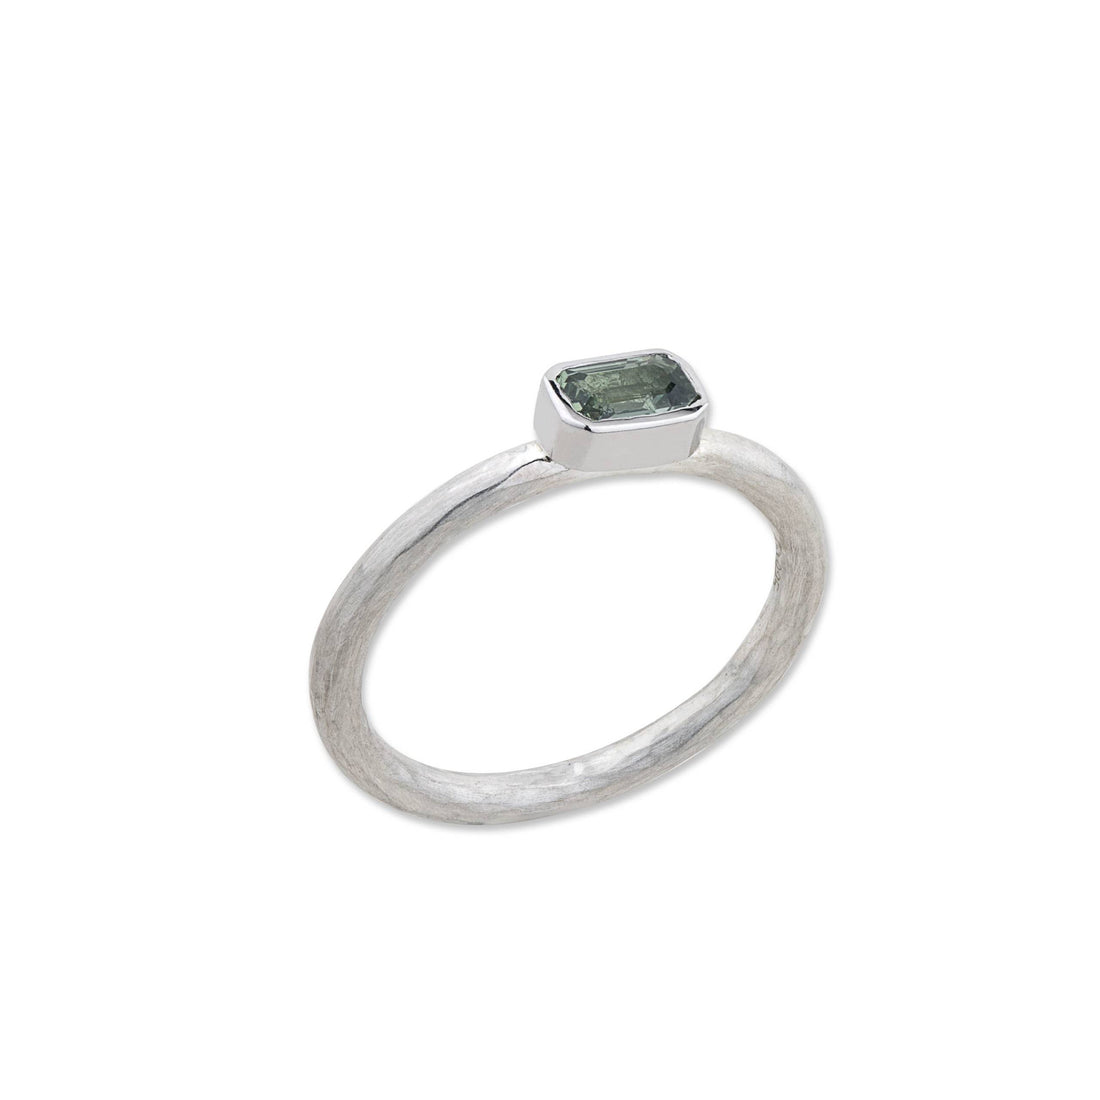 Lika Behar Silver Prismic Ring - Skeie's Jewelers